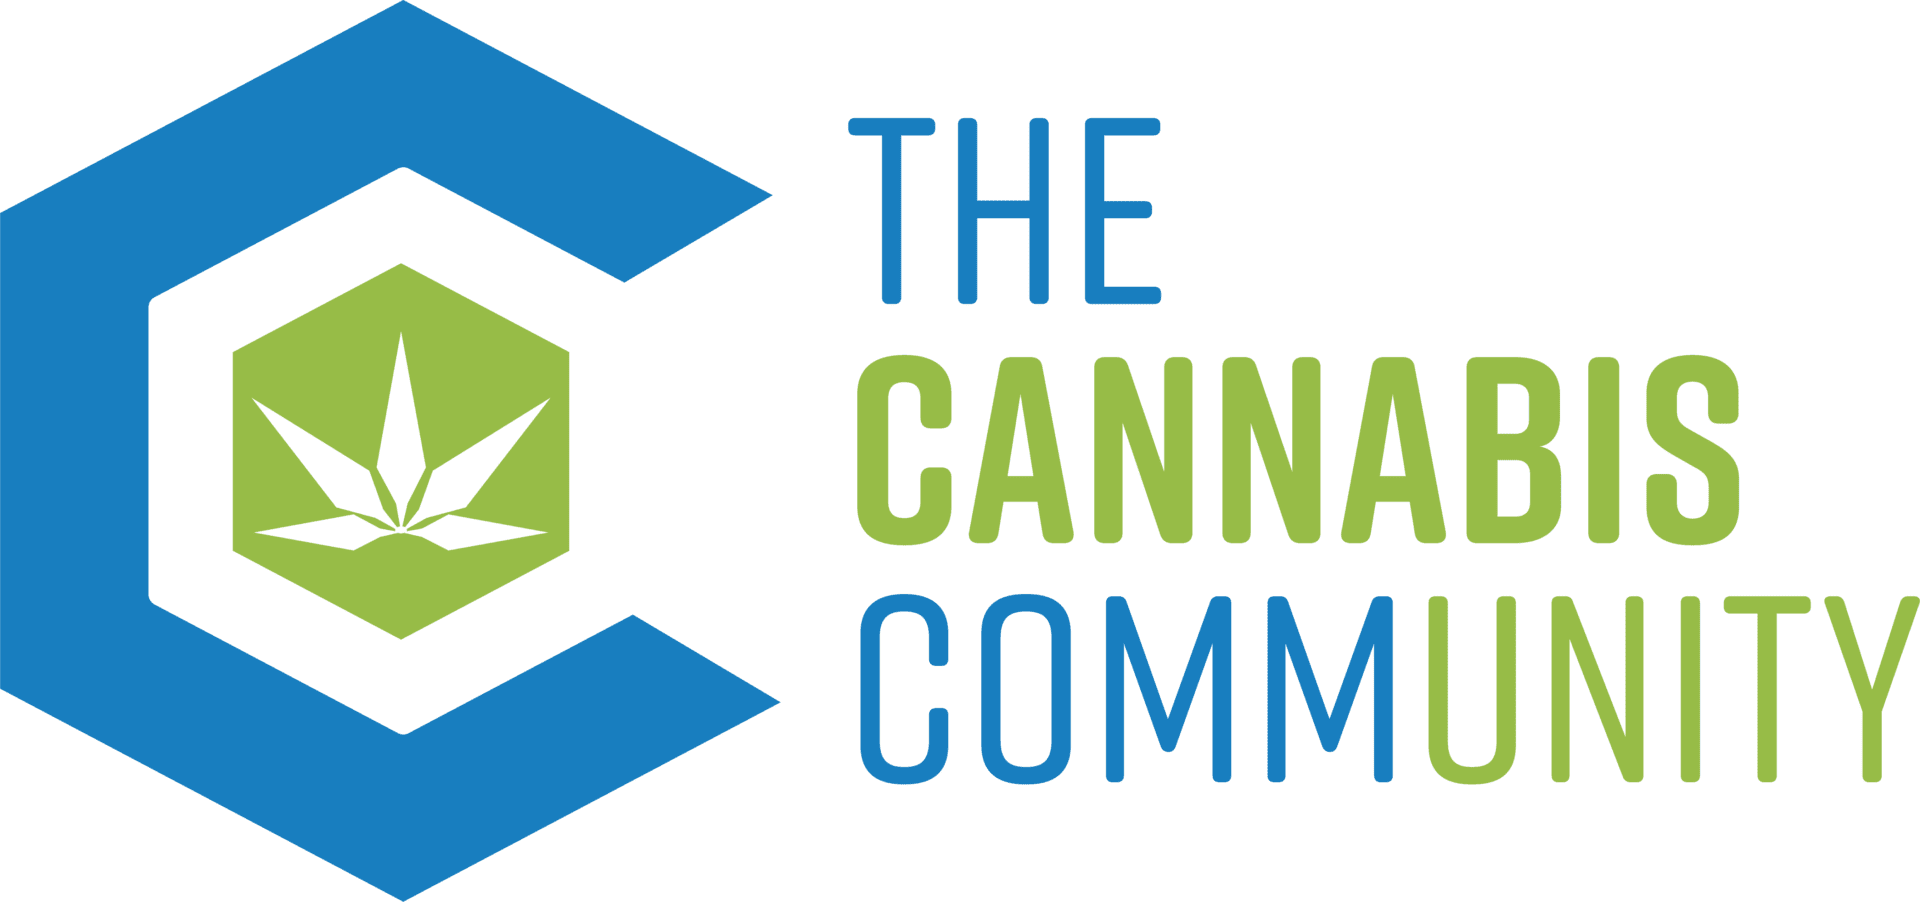 TheCannabisCommunity_Logo_Large_RBG